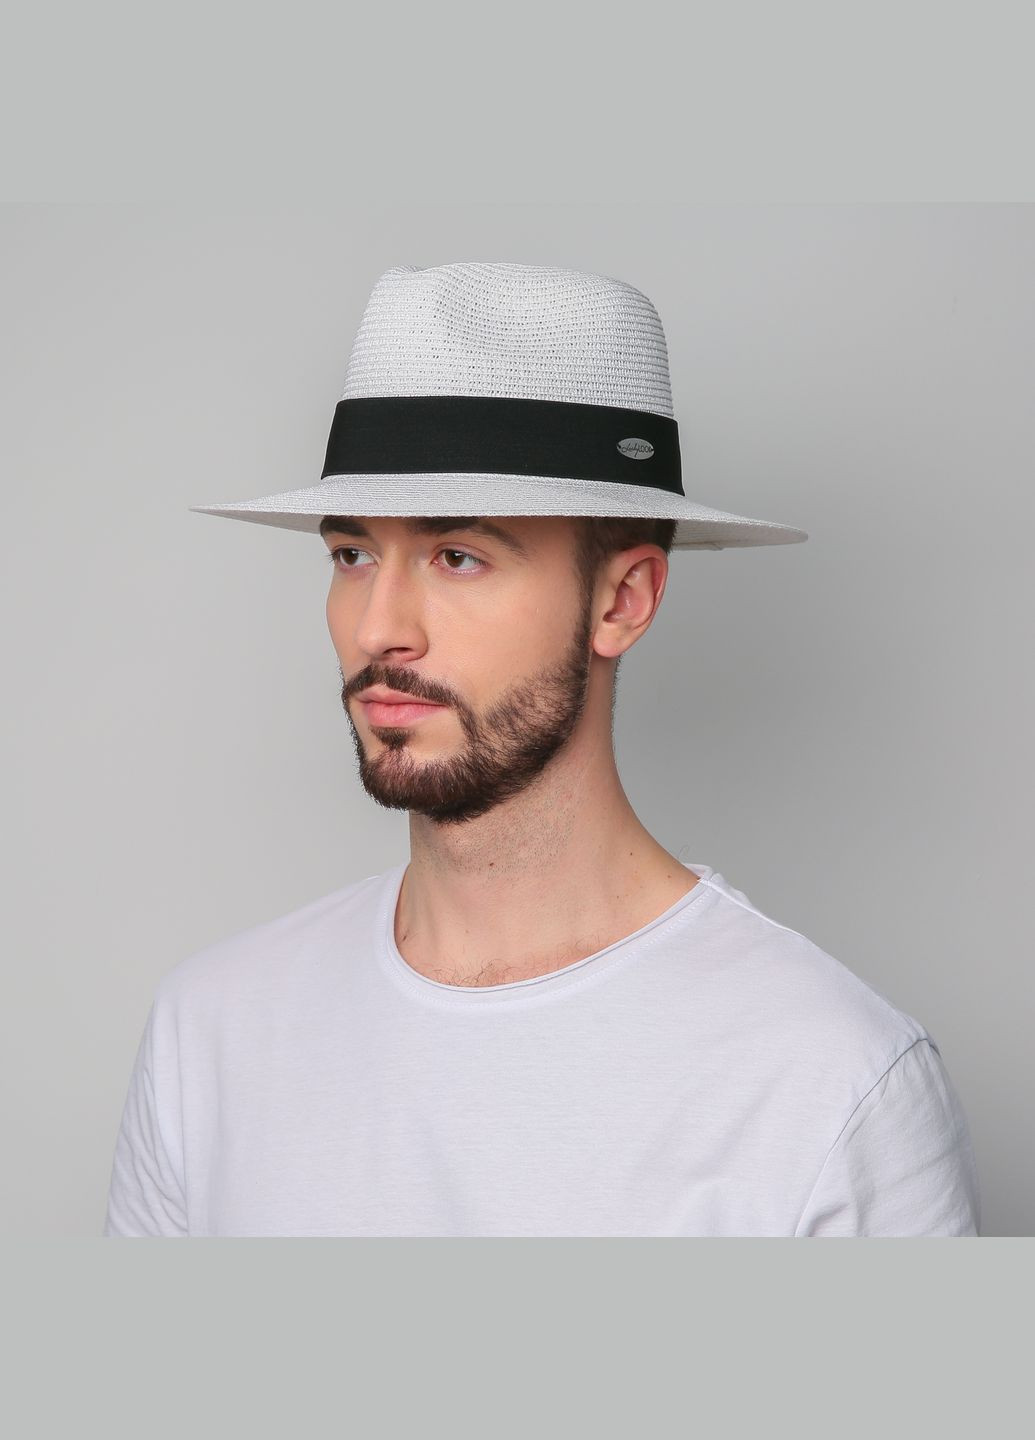 Шляпа федора мужская бумага белая CAMILLA 843-012 LuckyLOOK 843-012m (290186937)